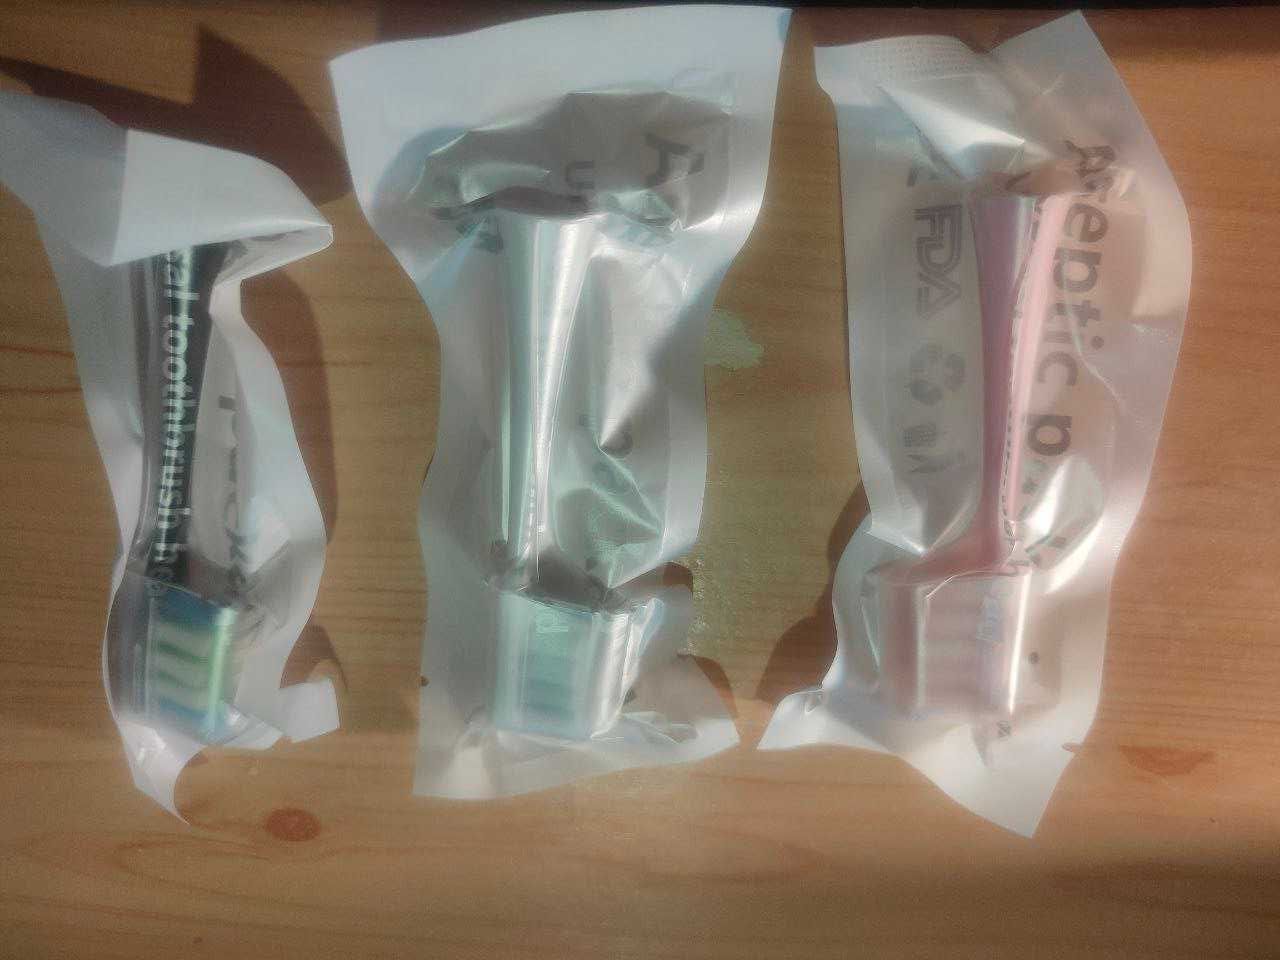 Насадки  для зубной щетки Oclean X/ X PRO/ Z1/ F1/ One/ Air 2 /SE-2шт